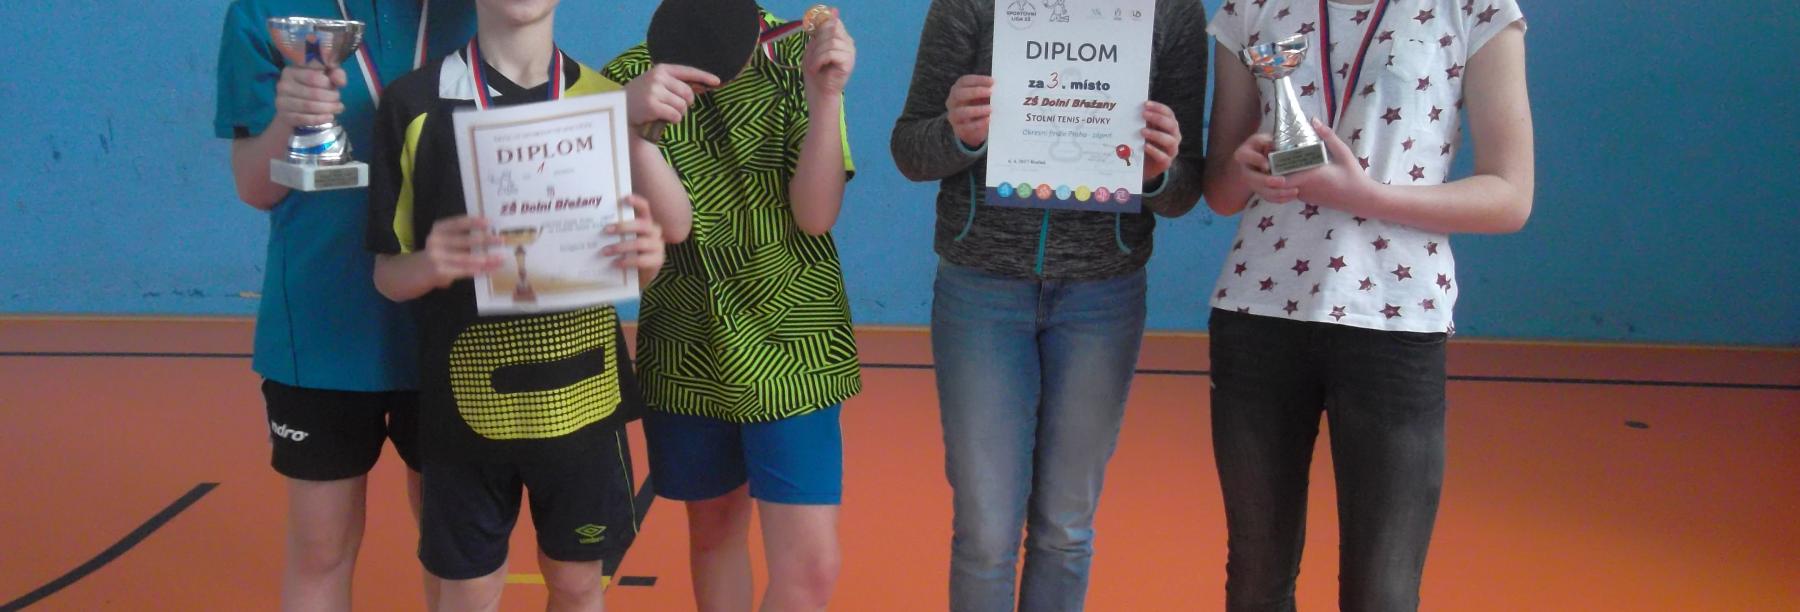 Naši stolní tenisté vybojovali 1. místo a naše děvčata obhájila 3. místo v okrese! 